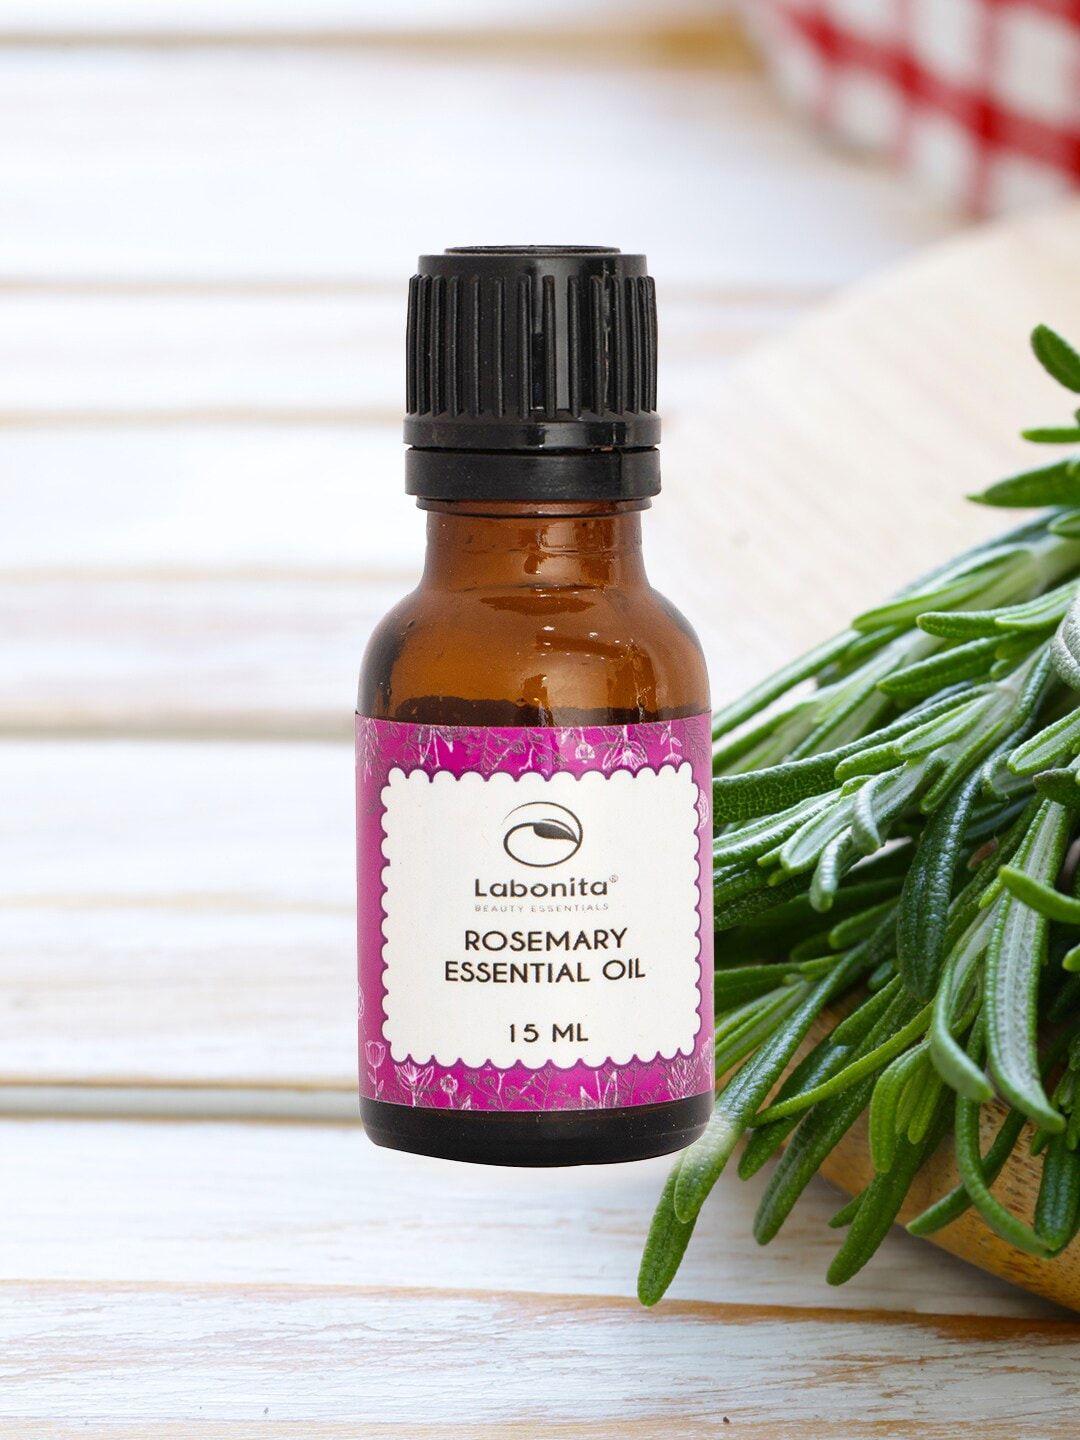 labonita natural rosemary essential oil - 15 ml